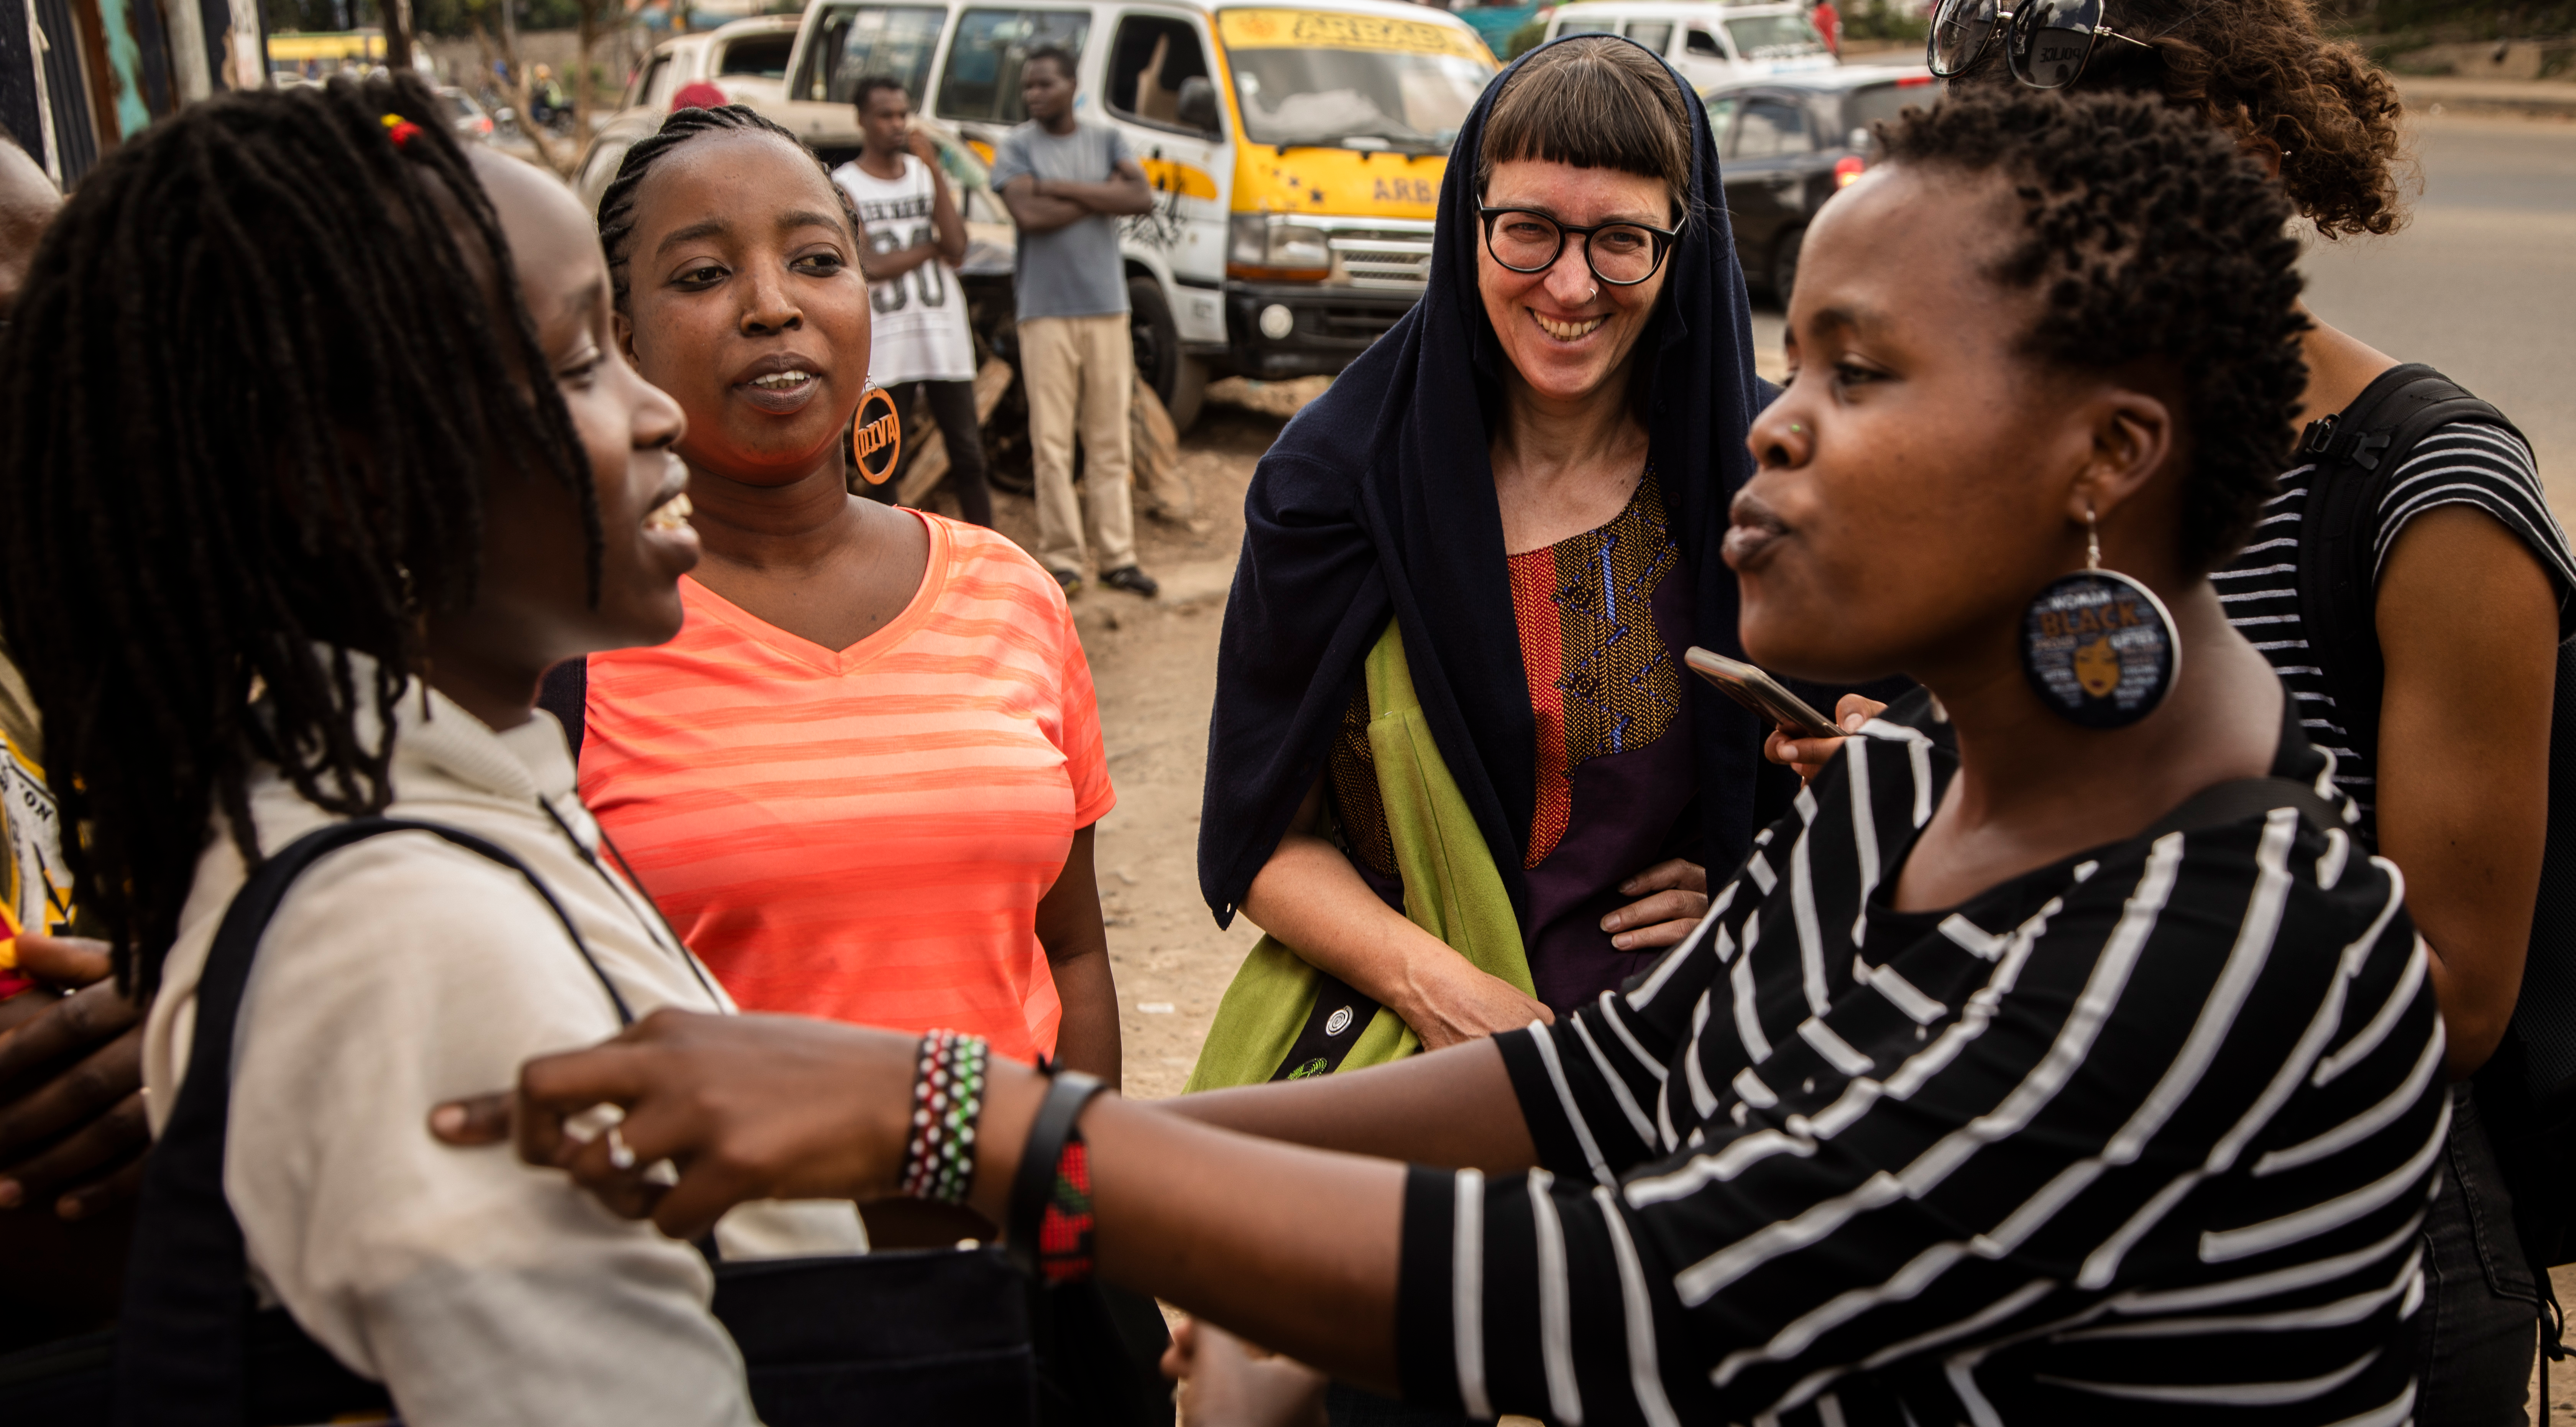 Emotions et défense des droits humains — entretien avec une activiste kényane